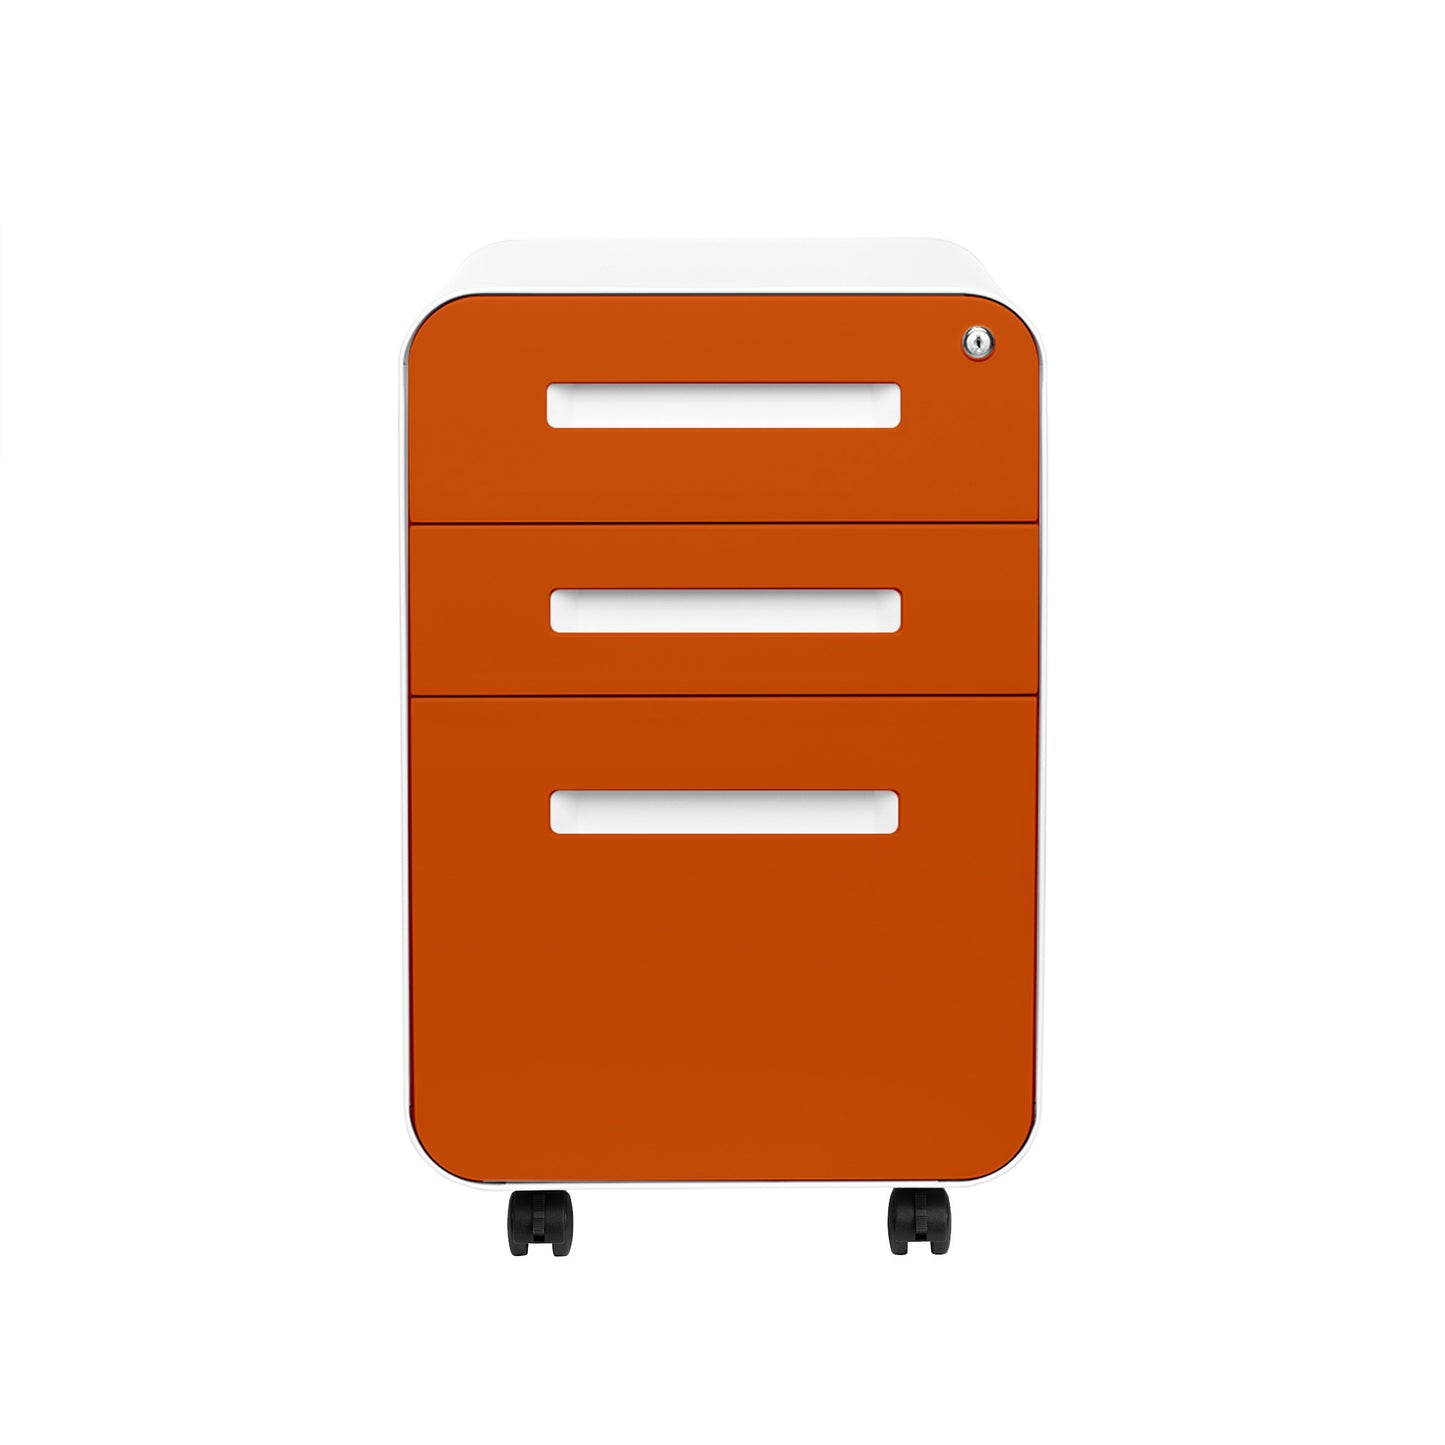 Stockpile Curve File Cabinet (Orange Faceplate)